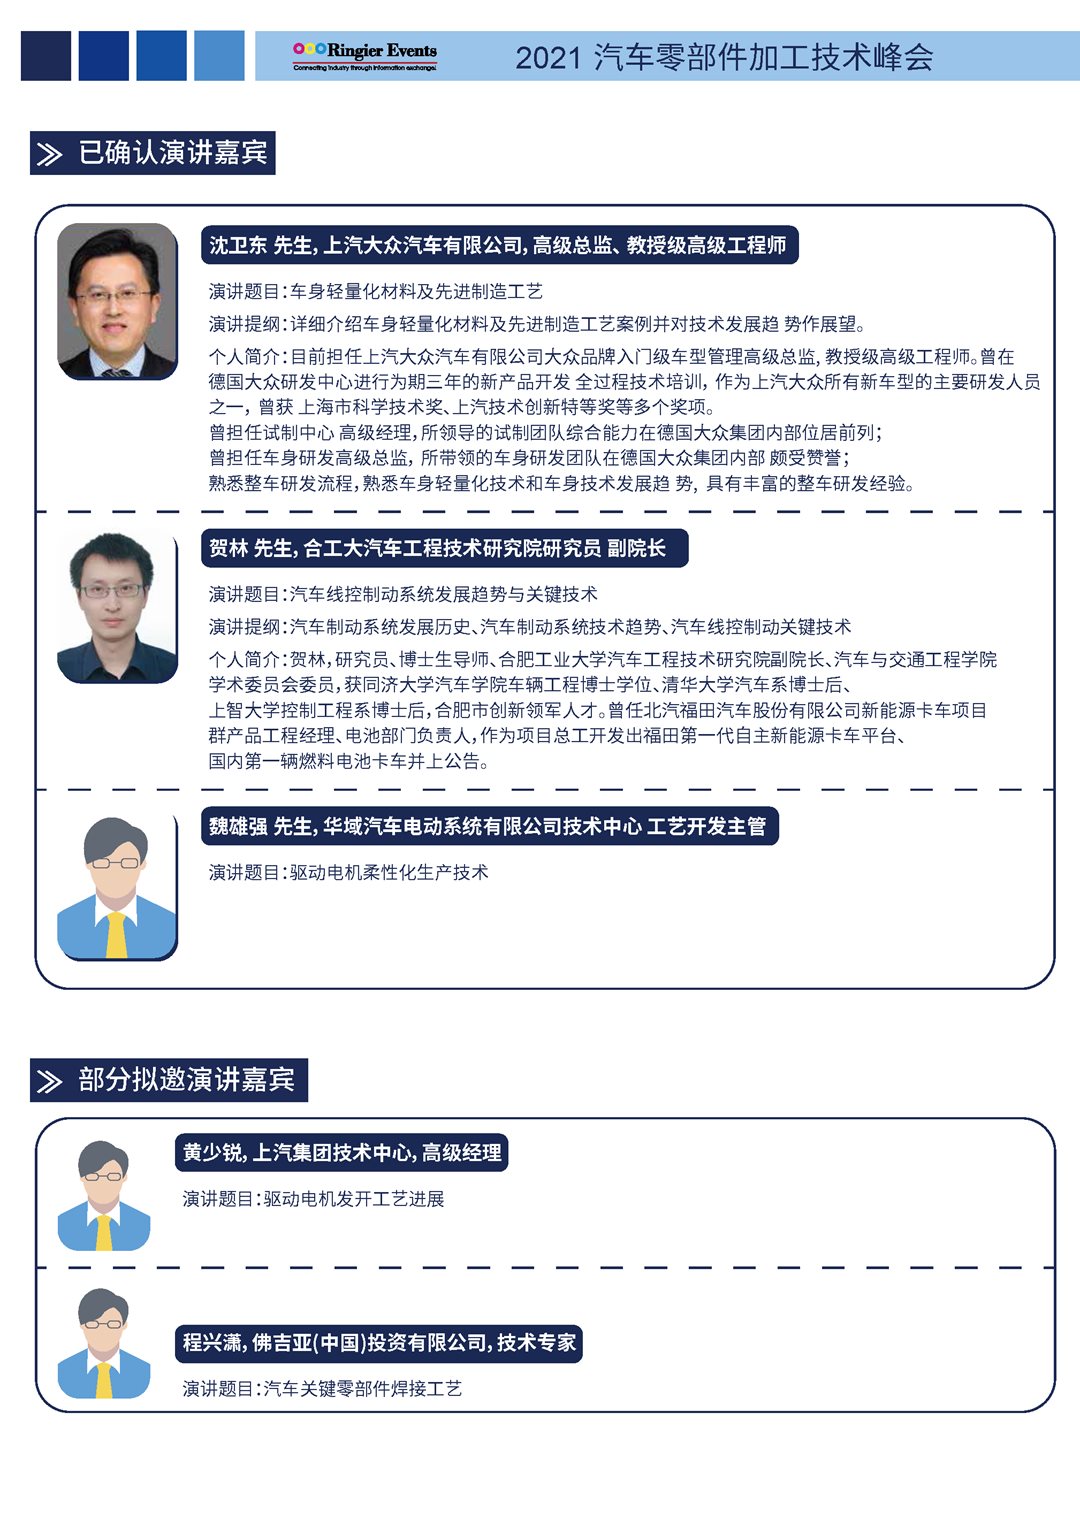 2021汽车零部件加工技术峰会-中文资料_页面_3.png